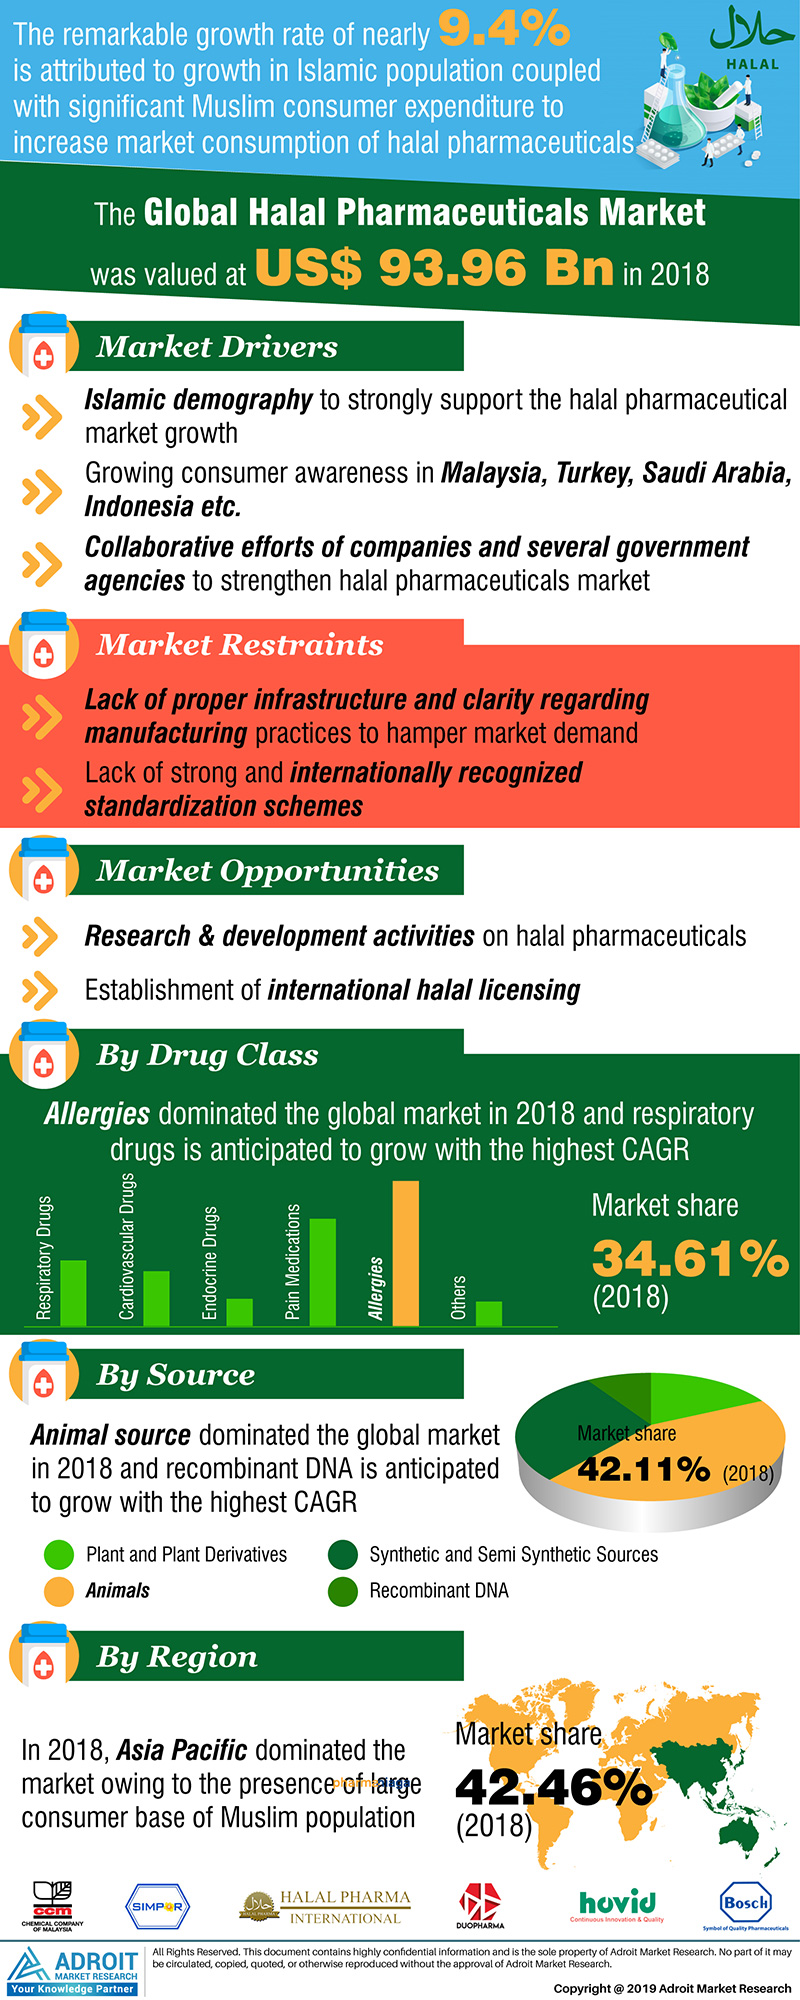 Halal Pharmaceuticals Market Size And Forecast 2020-2025'